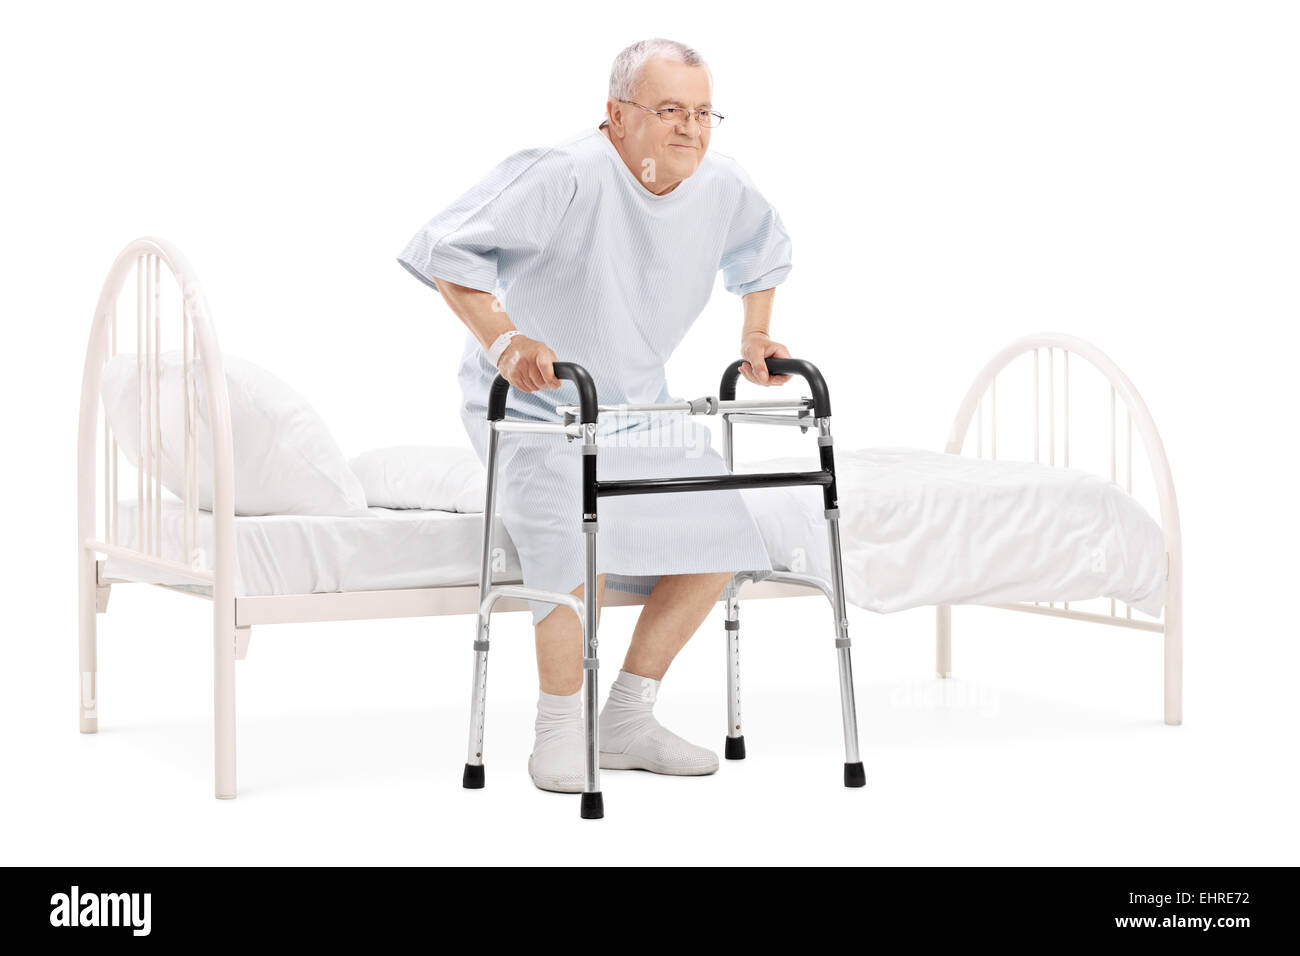 Больно вставать после операции. Кровать для пожилых людей. Приспособления для лежачих пожилых больных. Кровати для инвалидов и пожилых людей. Кровати для лежачих пожилых людей.